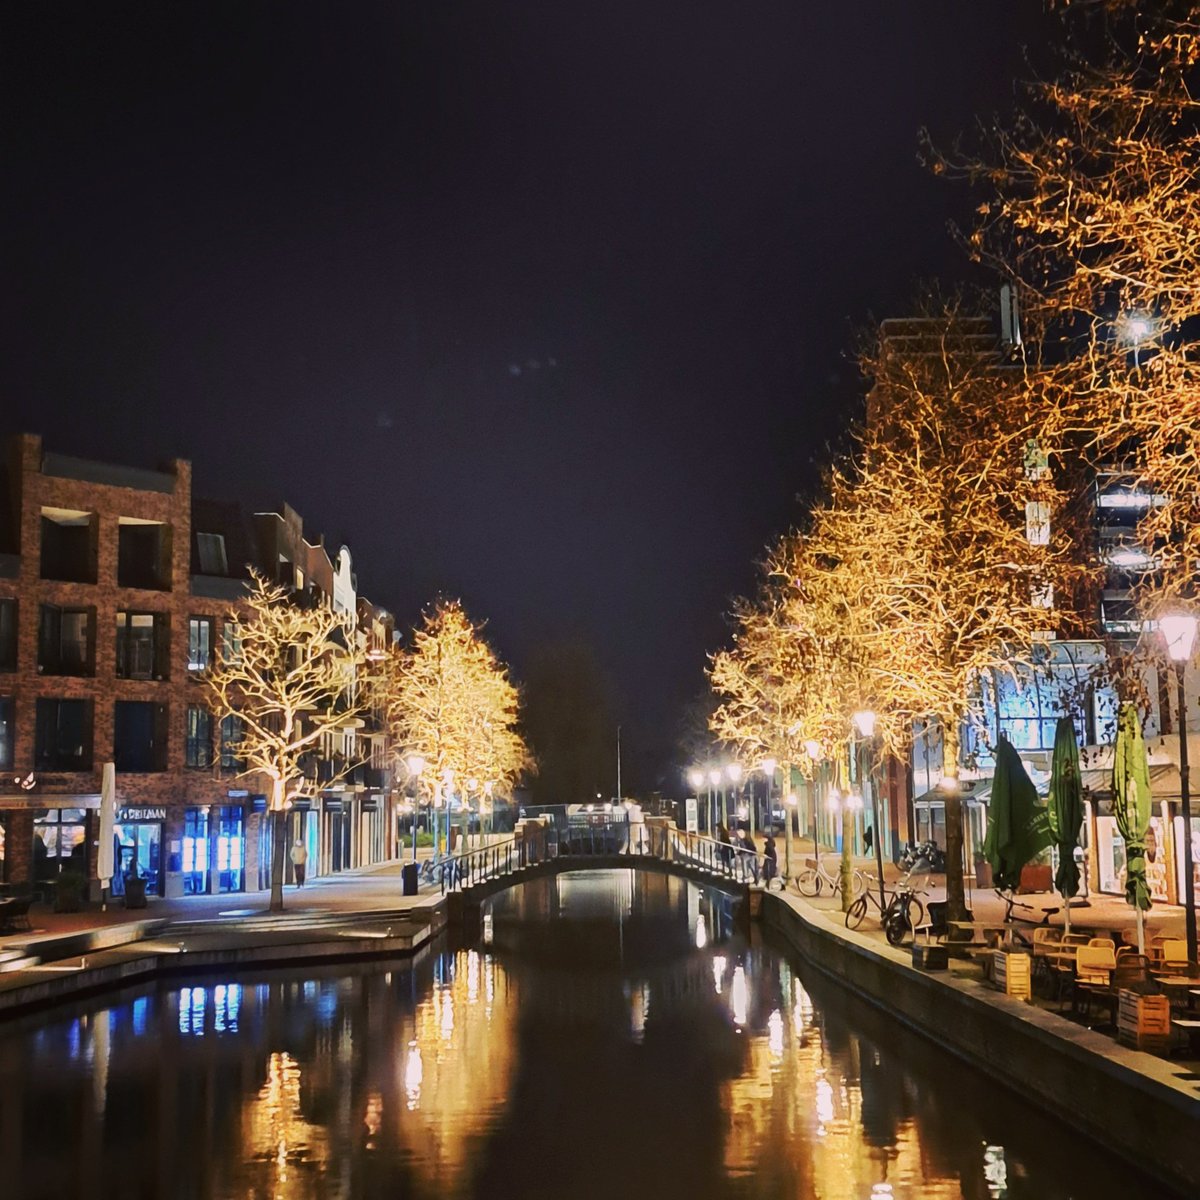 Alphen aan den Rijn by night
#alphenaandenrijn #aarkade #fridaynight #netherlands